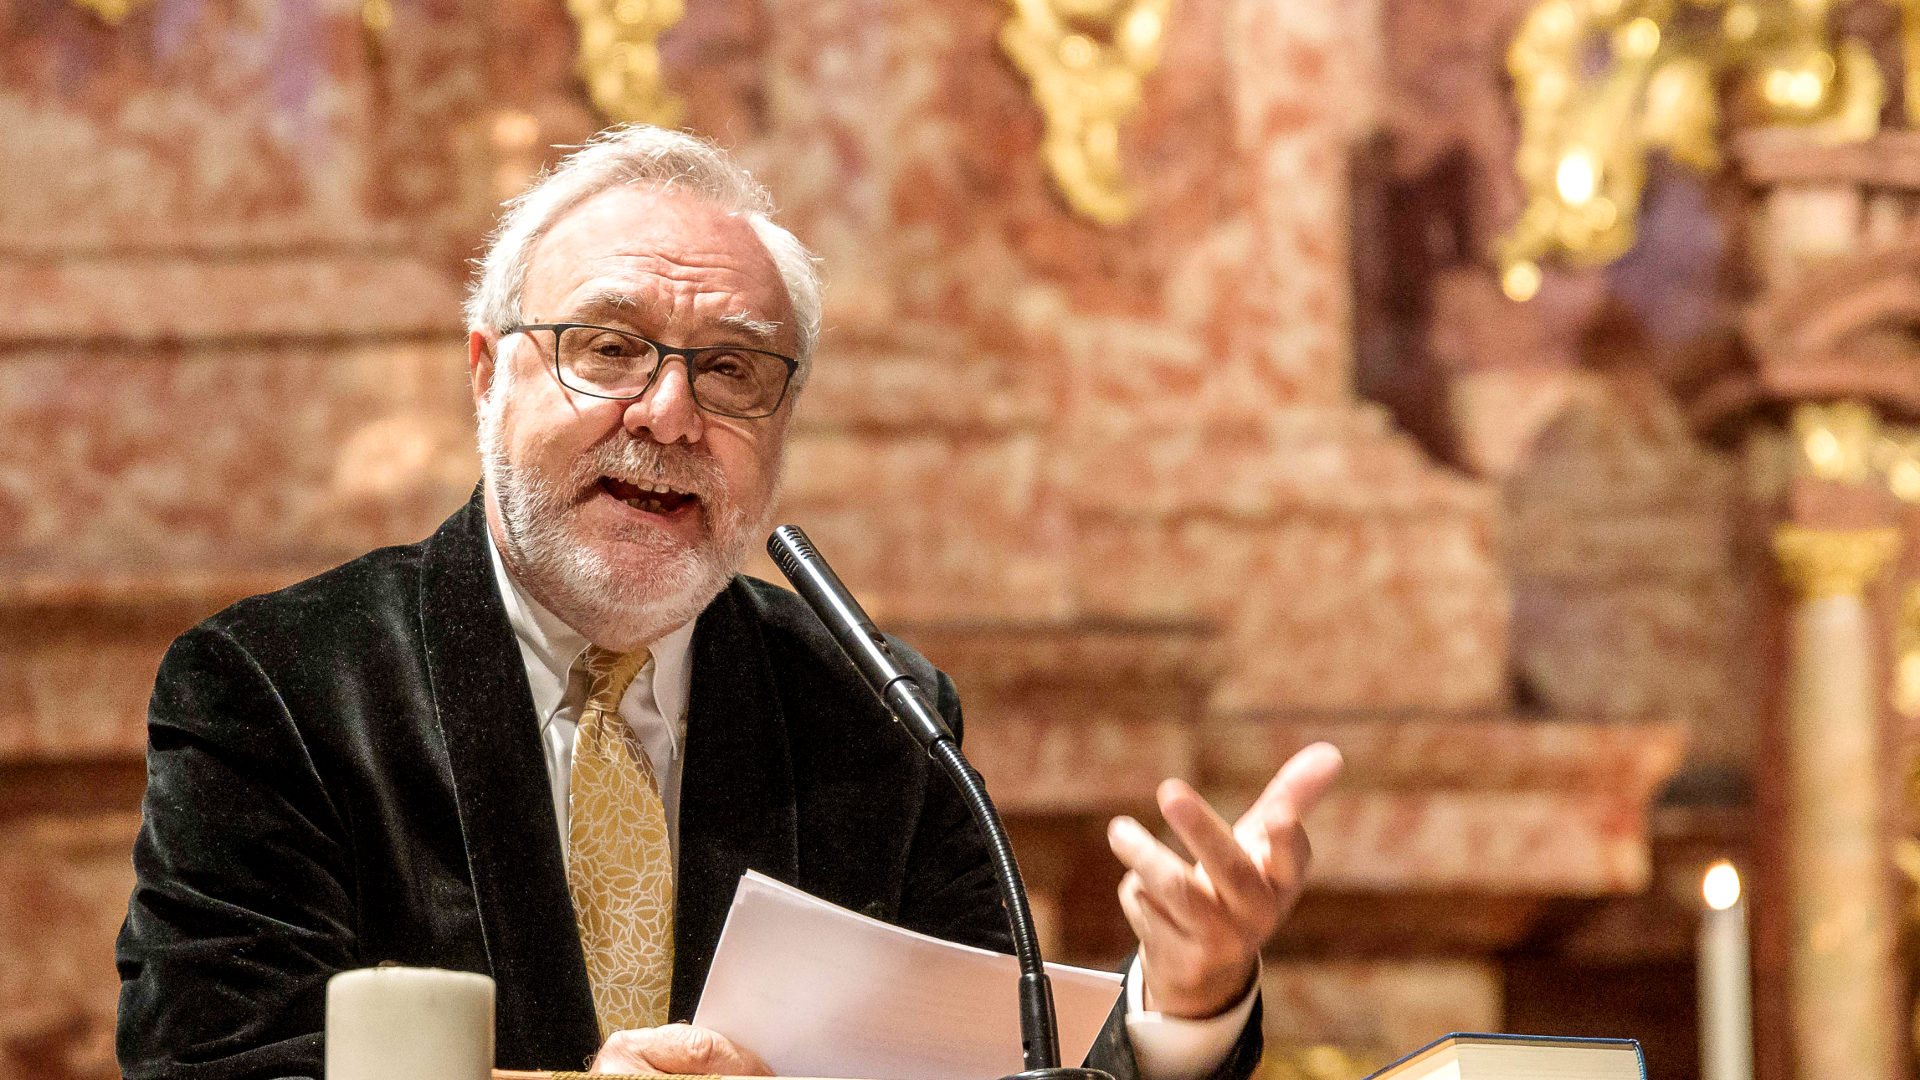 Marco Politi, Vatikan-Journalist und Buchautor, bei einem Vortrag in der Jesuitenkirche in Luzern